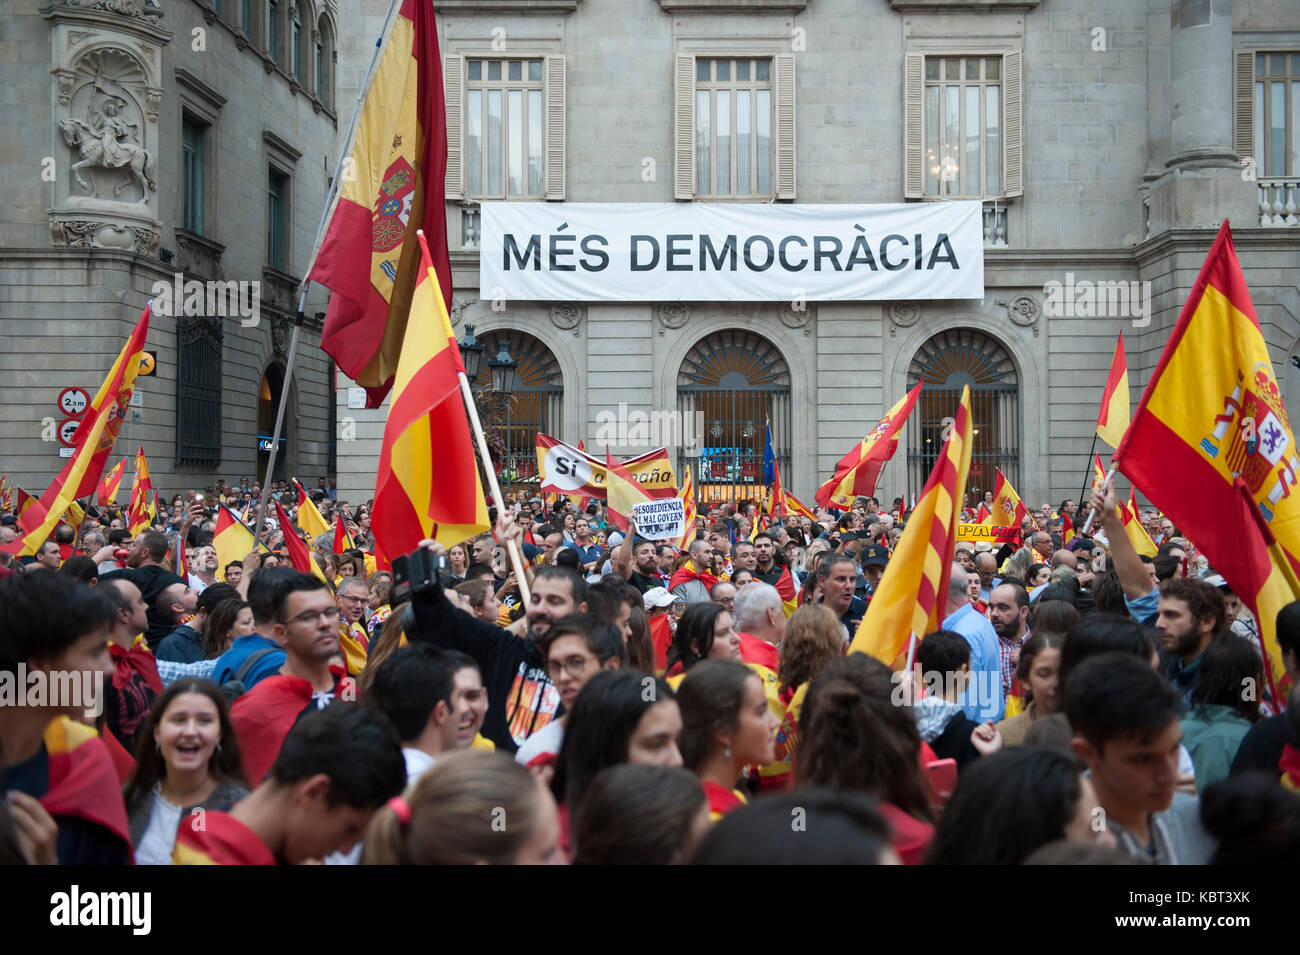 Migliaia di manifestanti hanno percorso le strade di Barcellona per esprimere la loro rabbia oltre il referendum di indipendenza della Catalogna che si svolgerà il 1 ottobre. Foto Stock